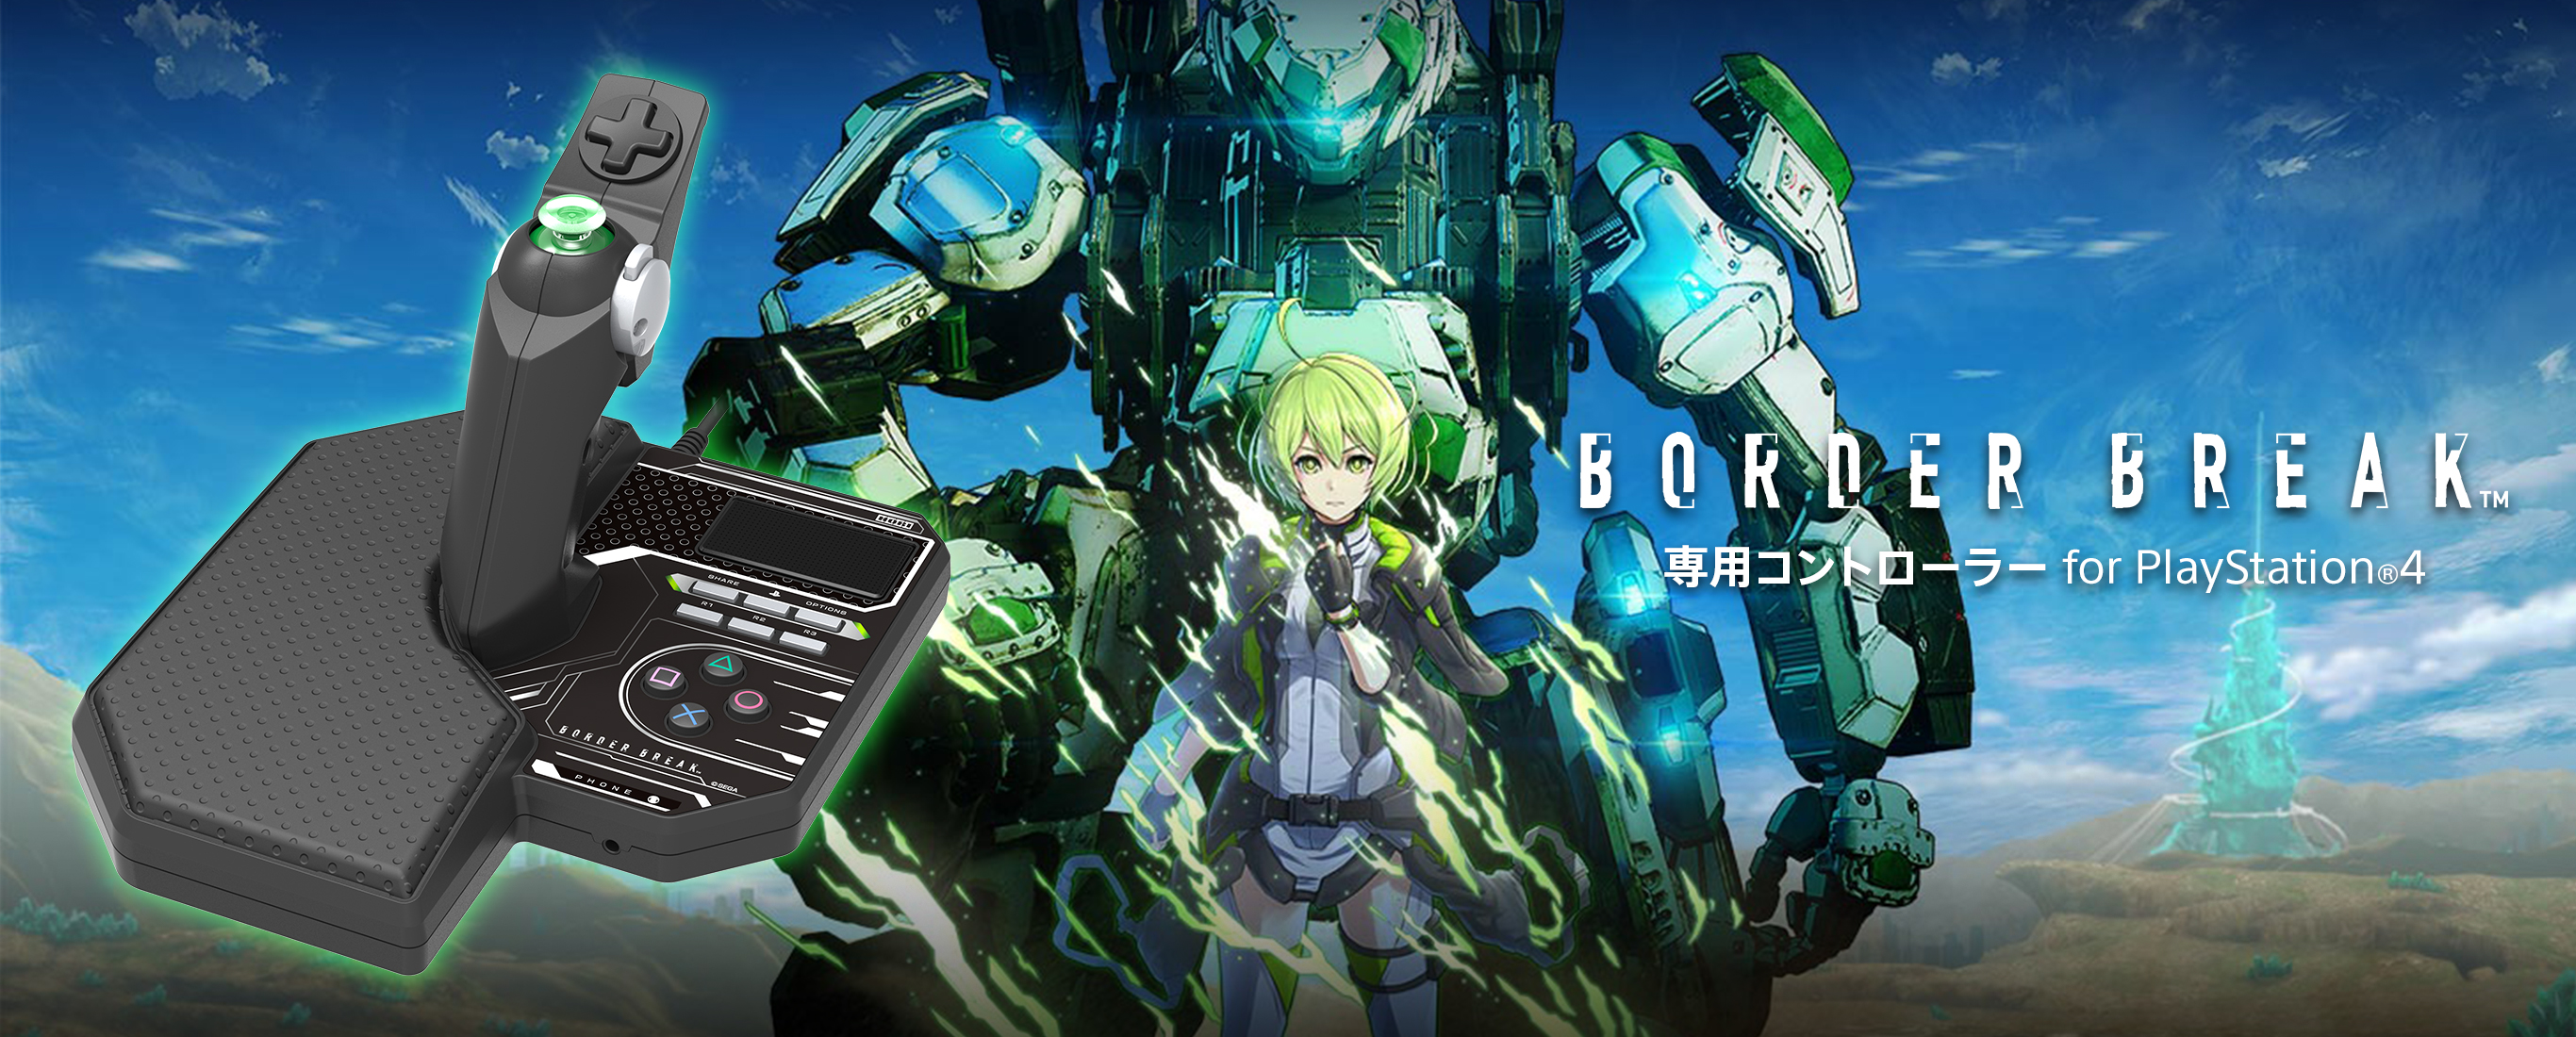 株式会社 HORI | 『BORDER BREAK』専用コントローラー for PlayStation®4